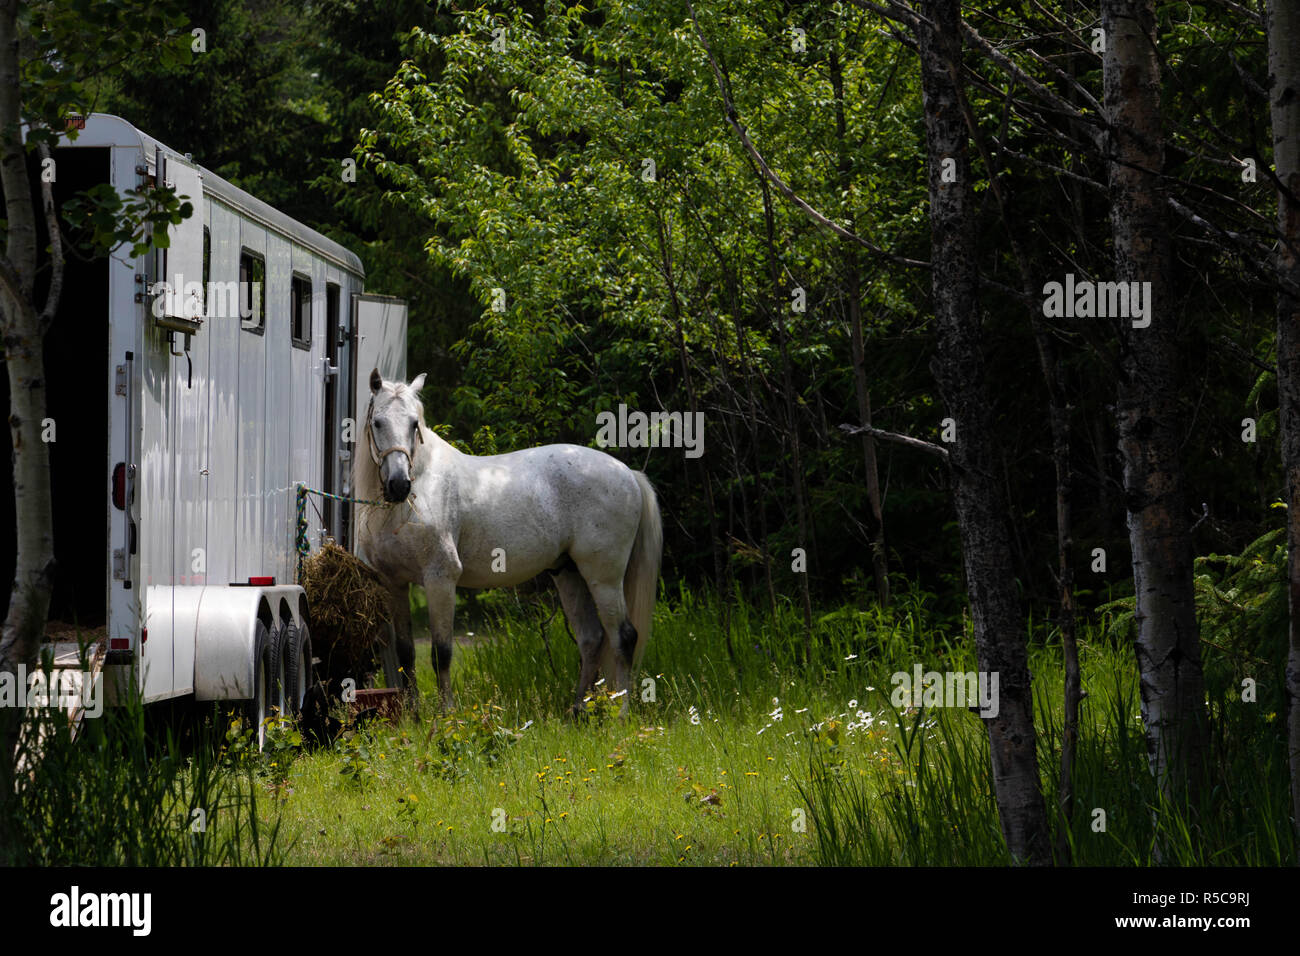 Un cheval attaché à un camion. Une photo prise à Baie St-Paul dans la région de Québec, Canada à l'été. Banque D'Images